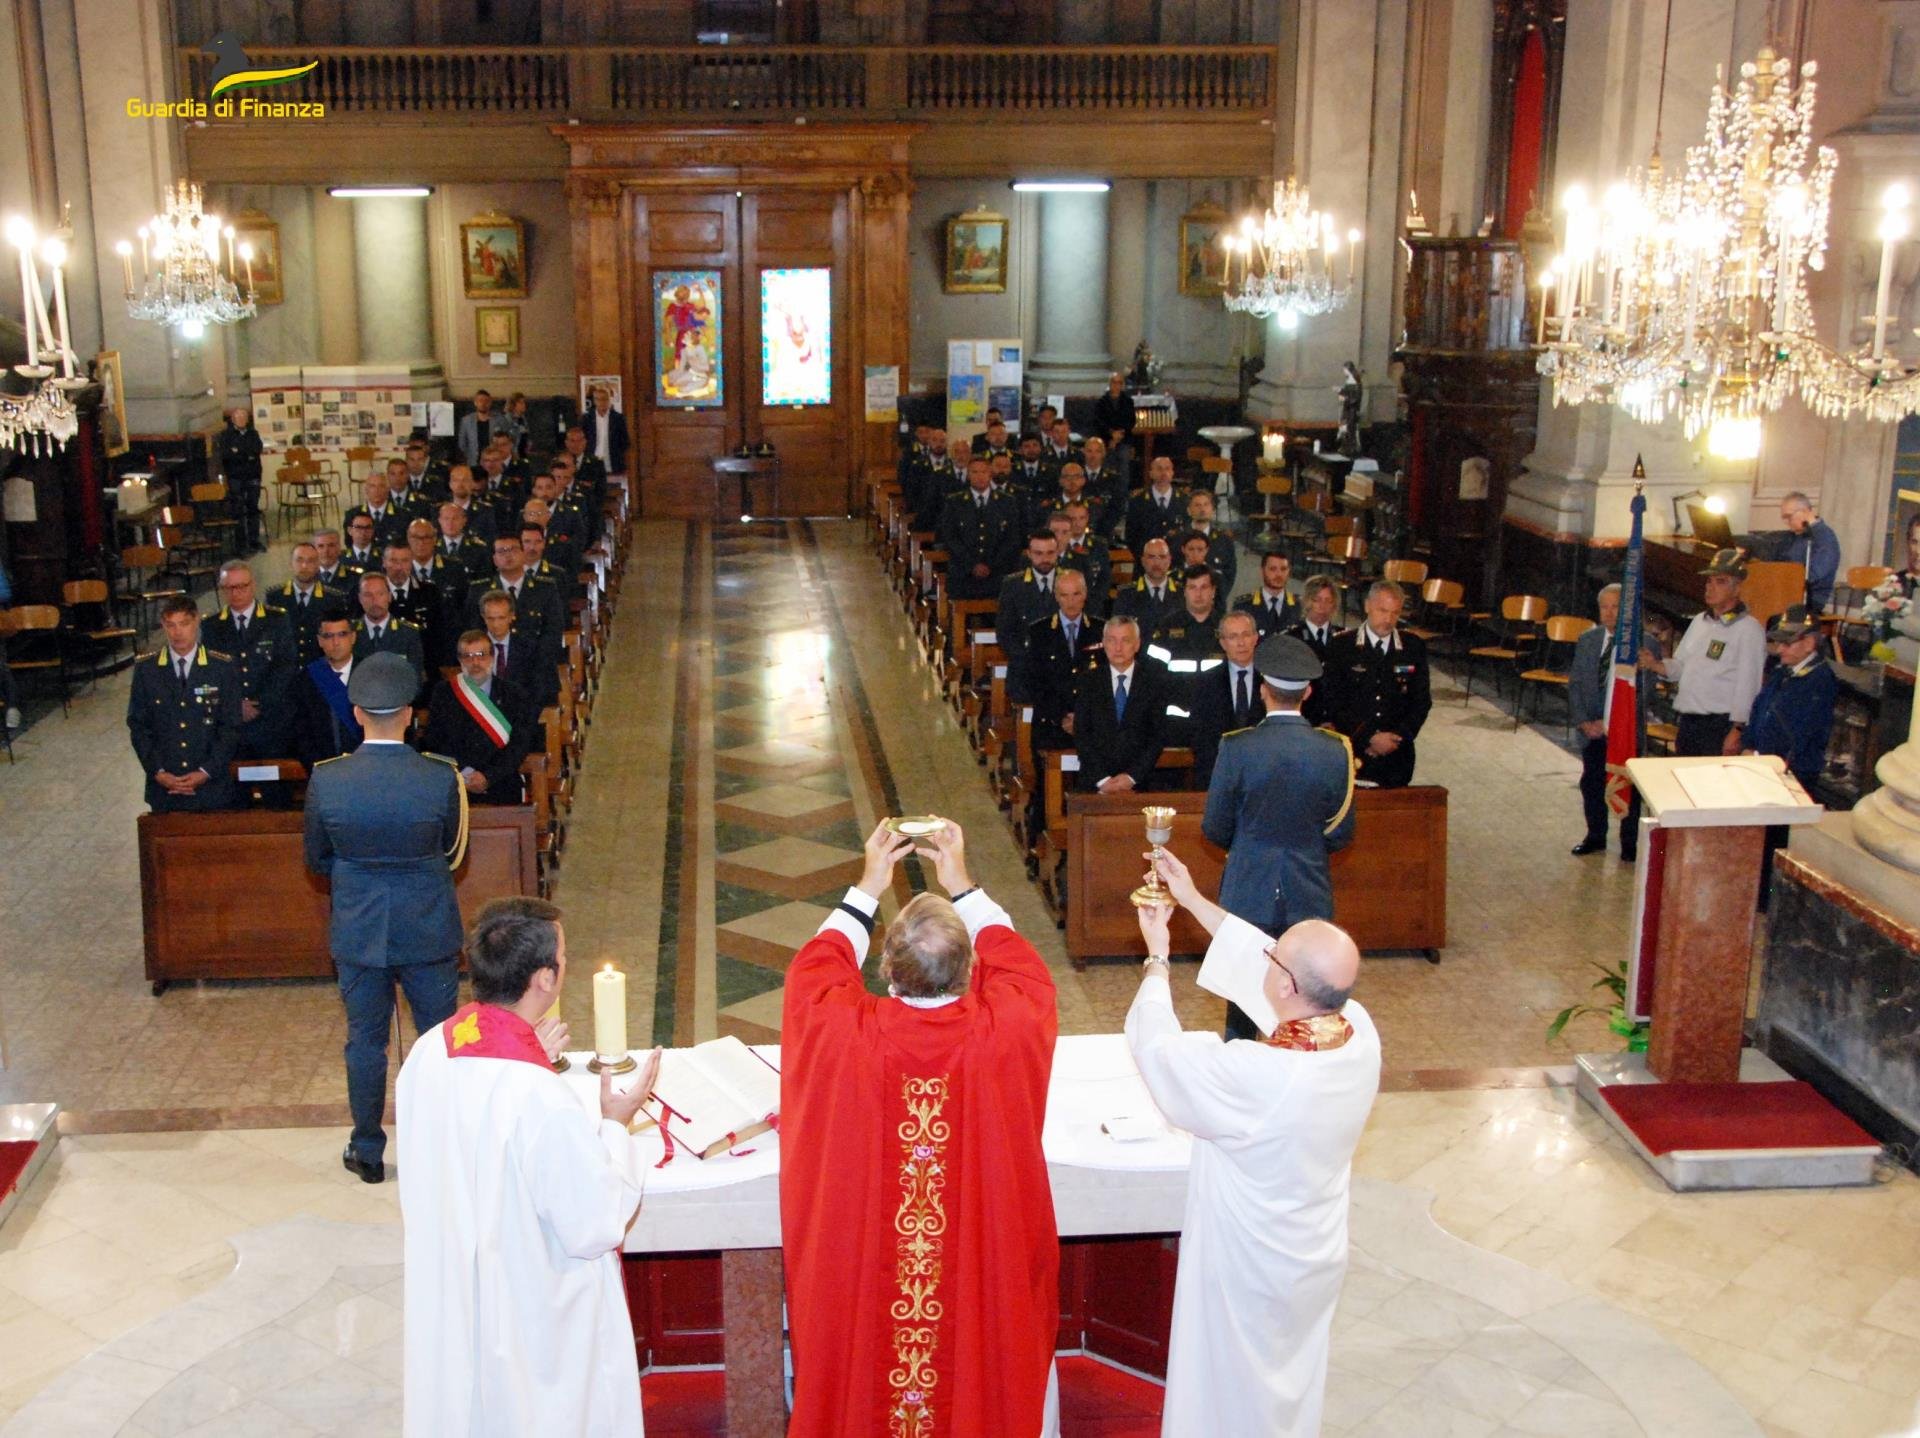 La Guardia di Finanza di Alessandria celebra il patrono San Matteo